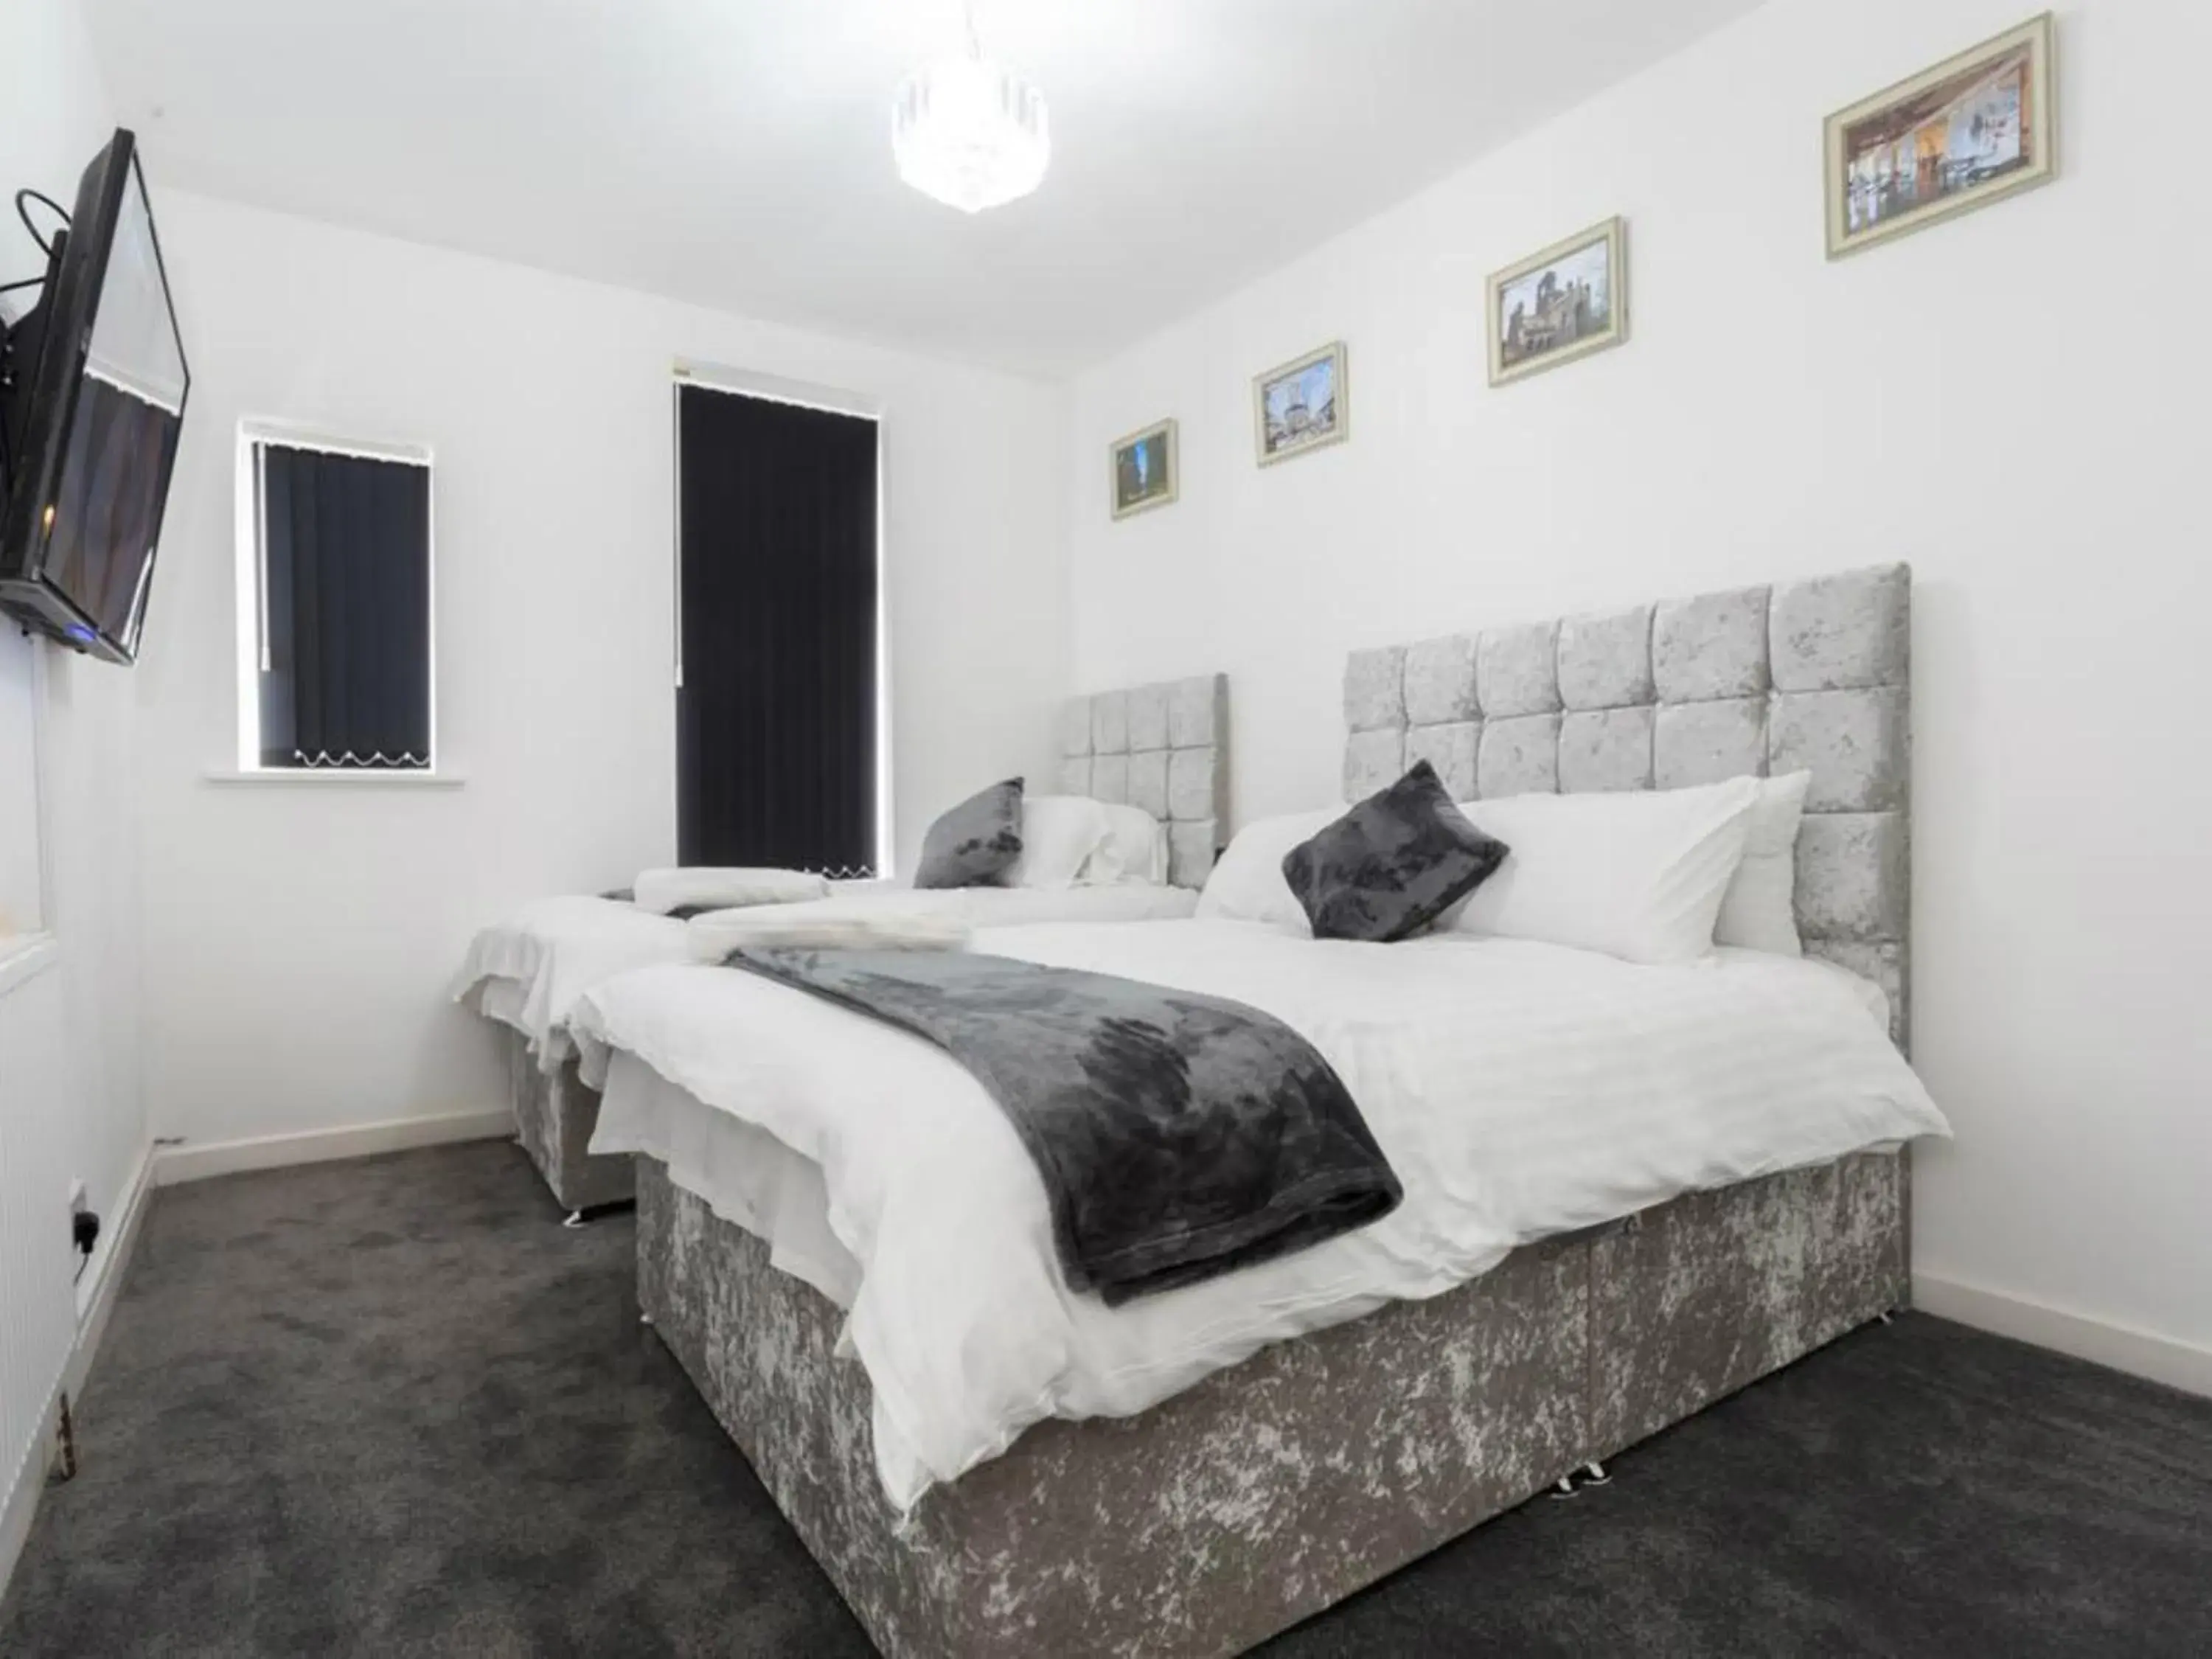 Bedroom, Bed in Live in Leeds Grange Apartments